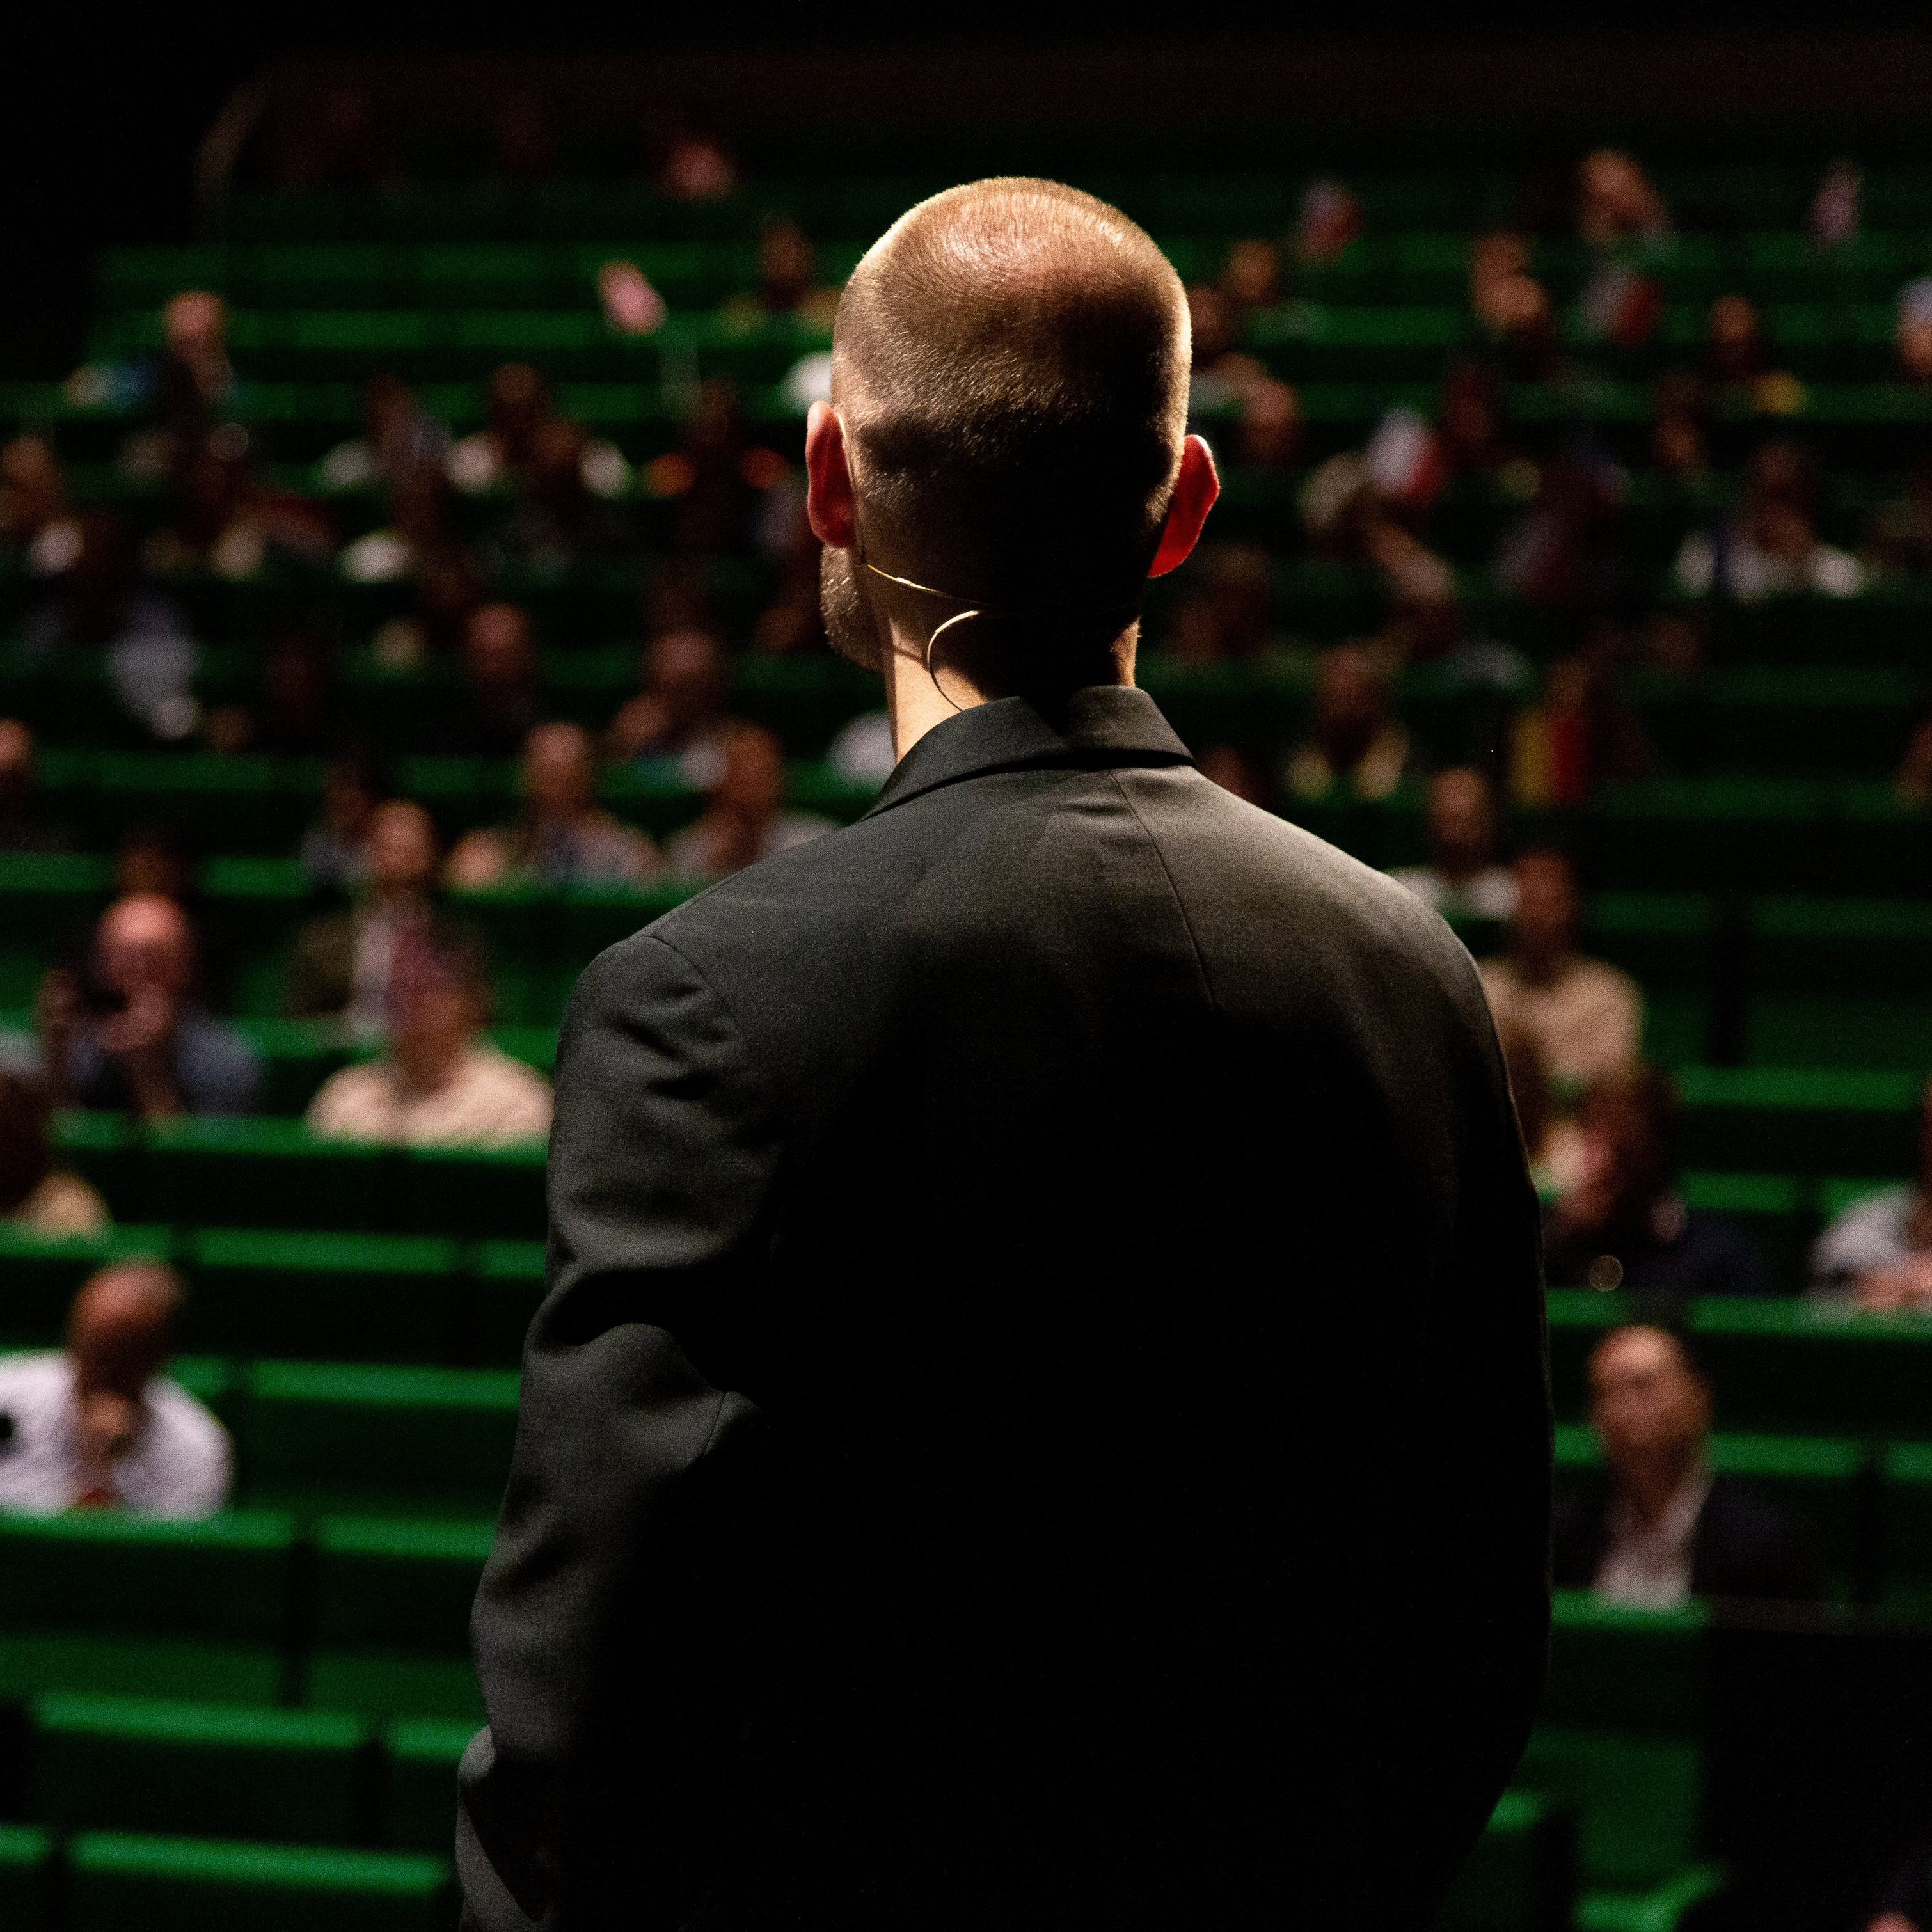 Mężczyzna w czarnym garniturze stoi naprzeciwko publiczności w zielonym audytorium.